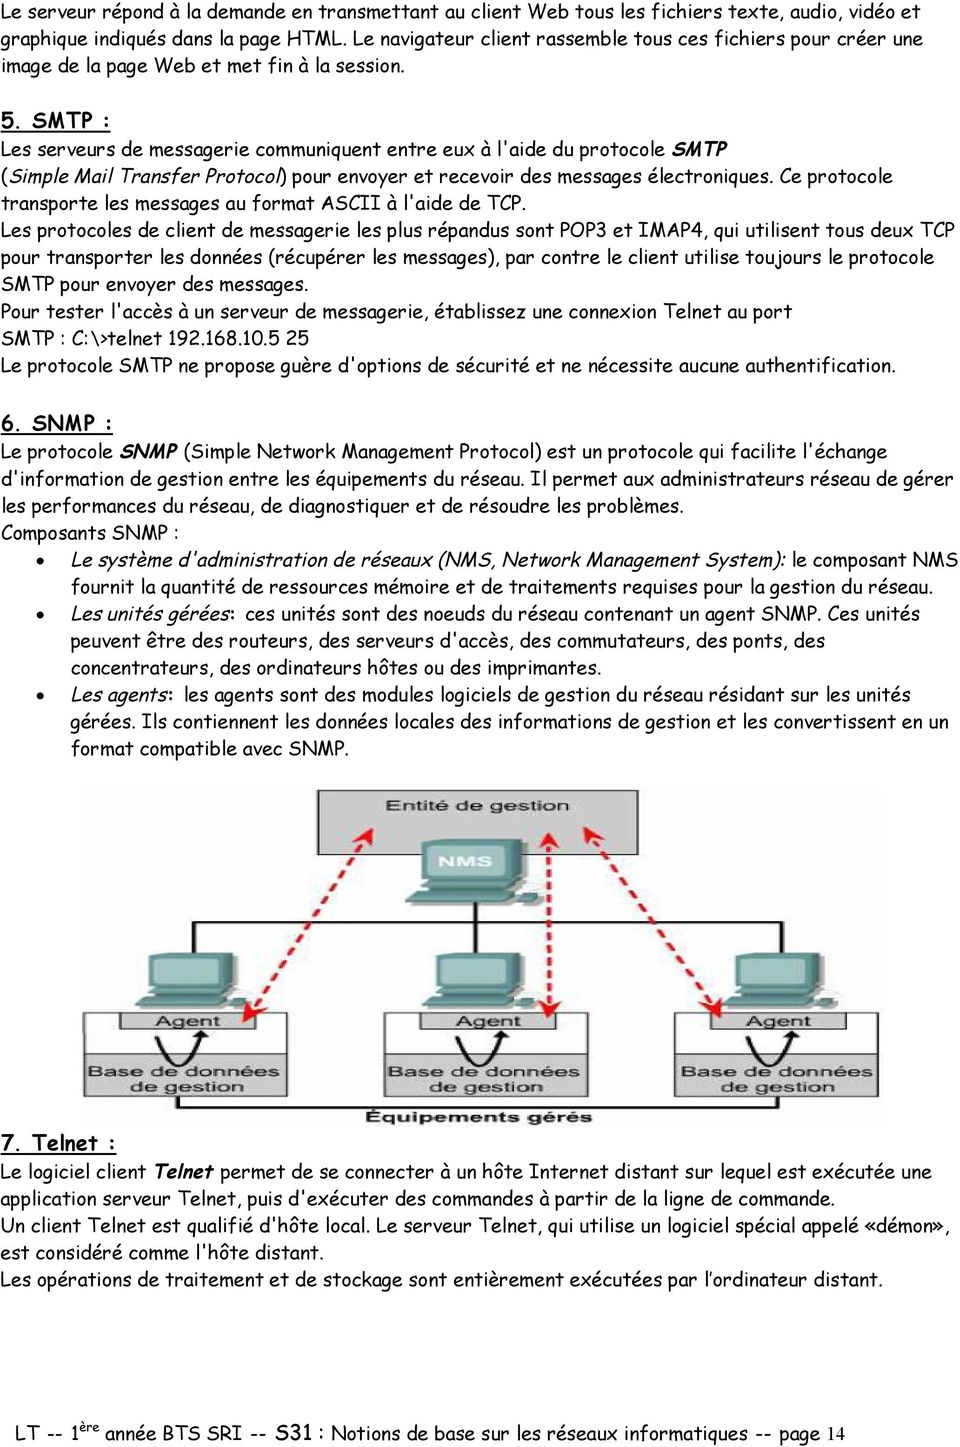 SMTP : Les serveurs de messagerie communiquent entre eux à l'aide du protocole SMTP (Simple Mail Transfer Protocol) pour envoyer et recevoir des messages électroniques.